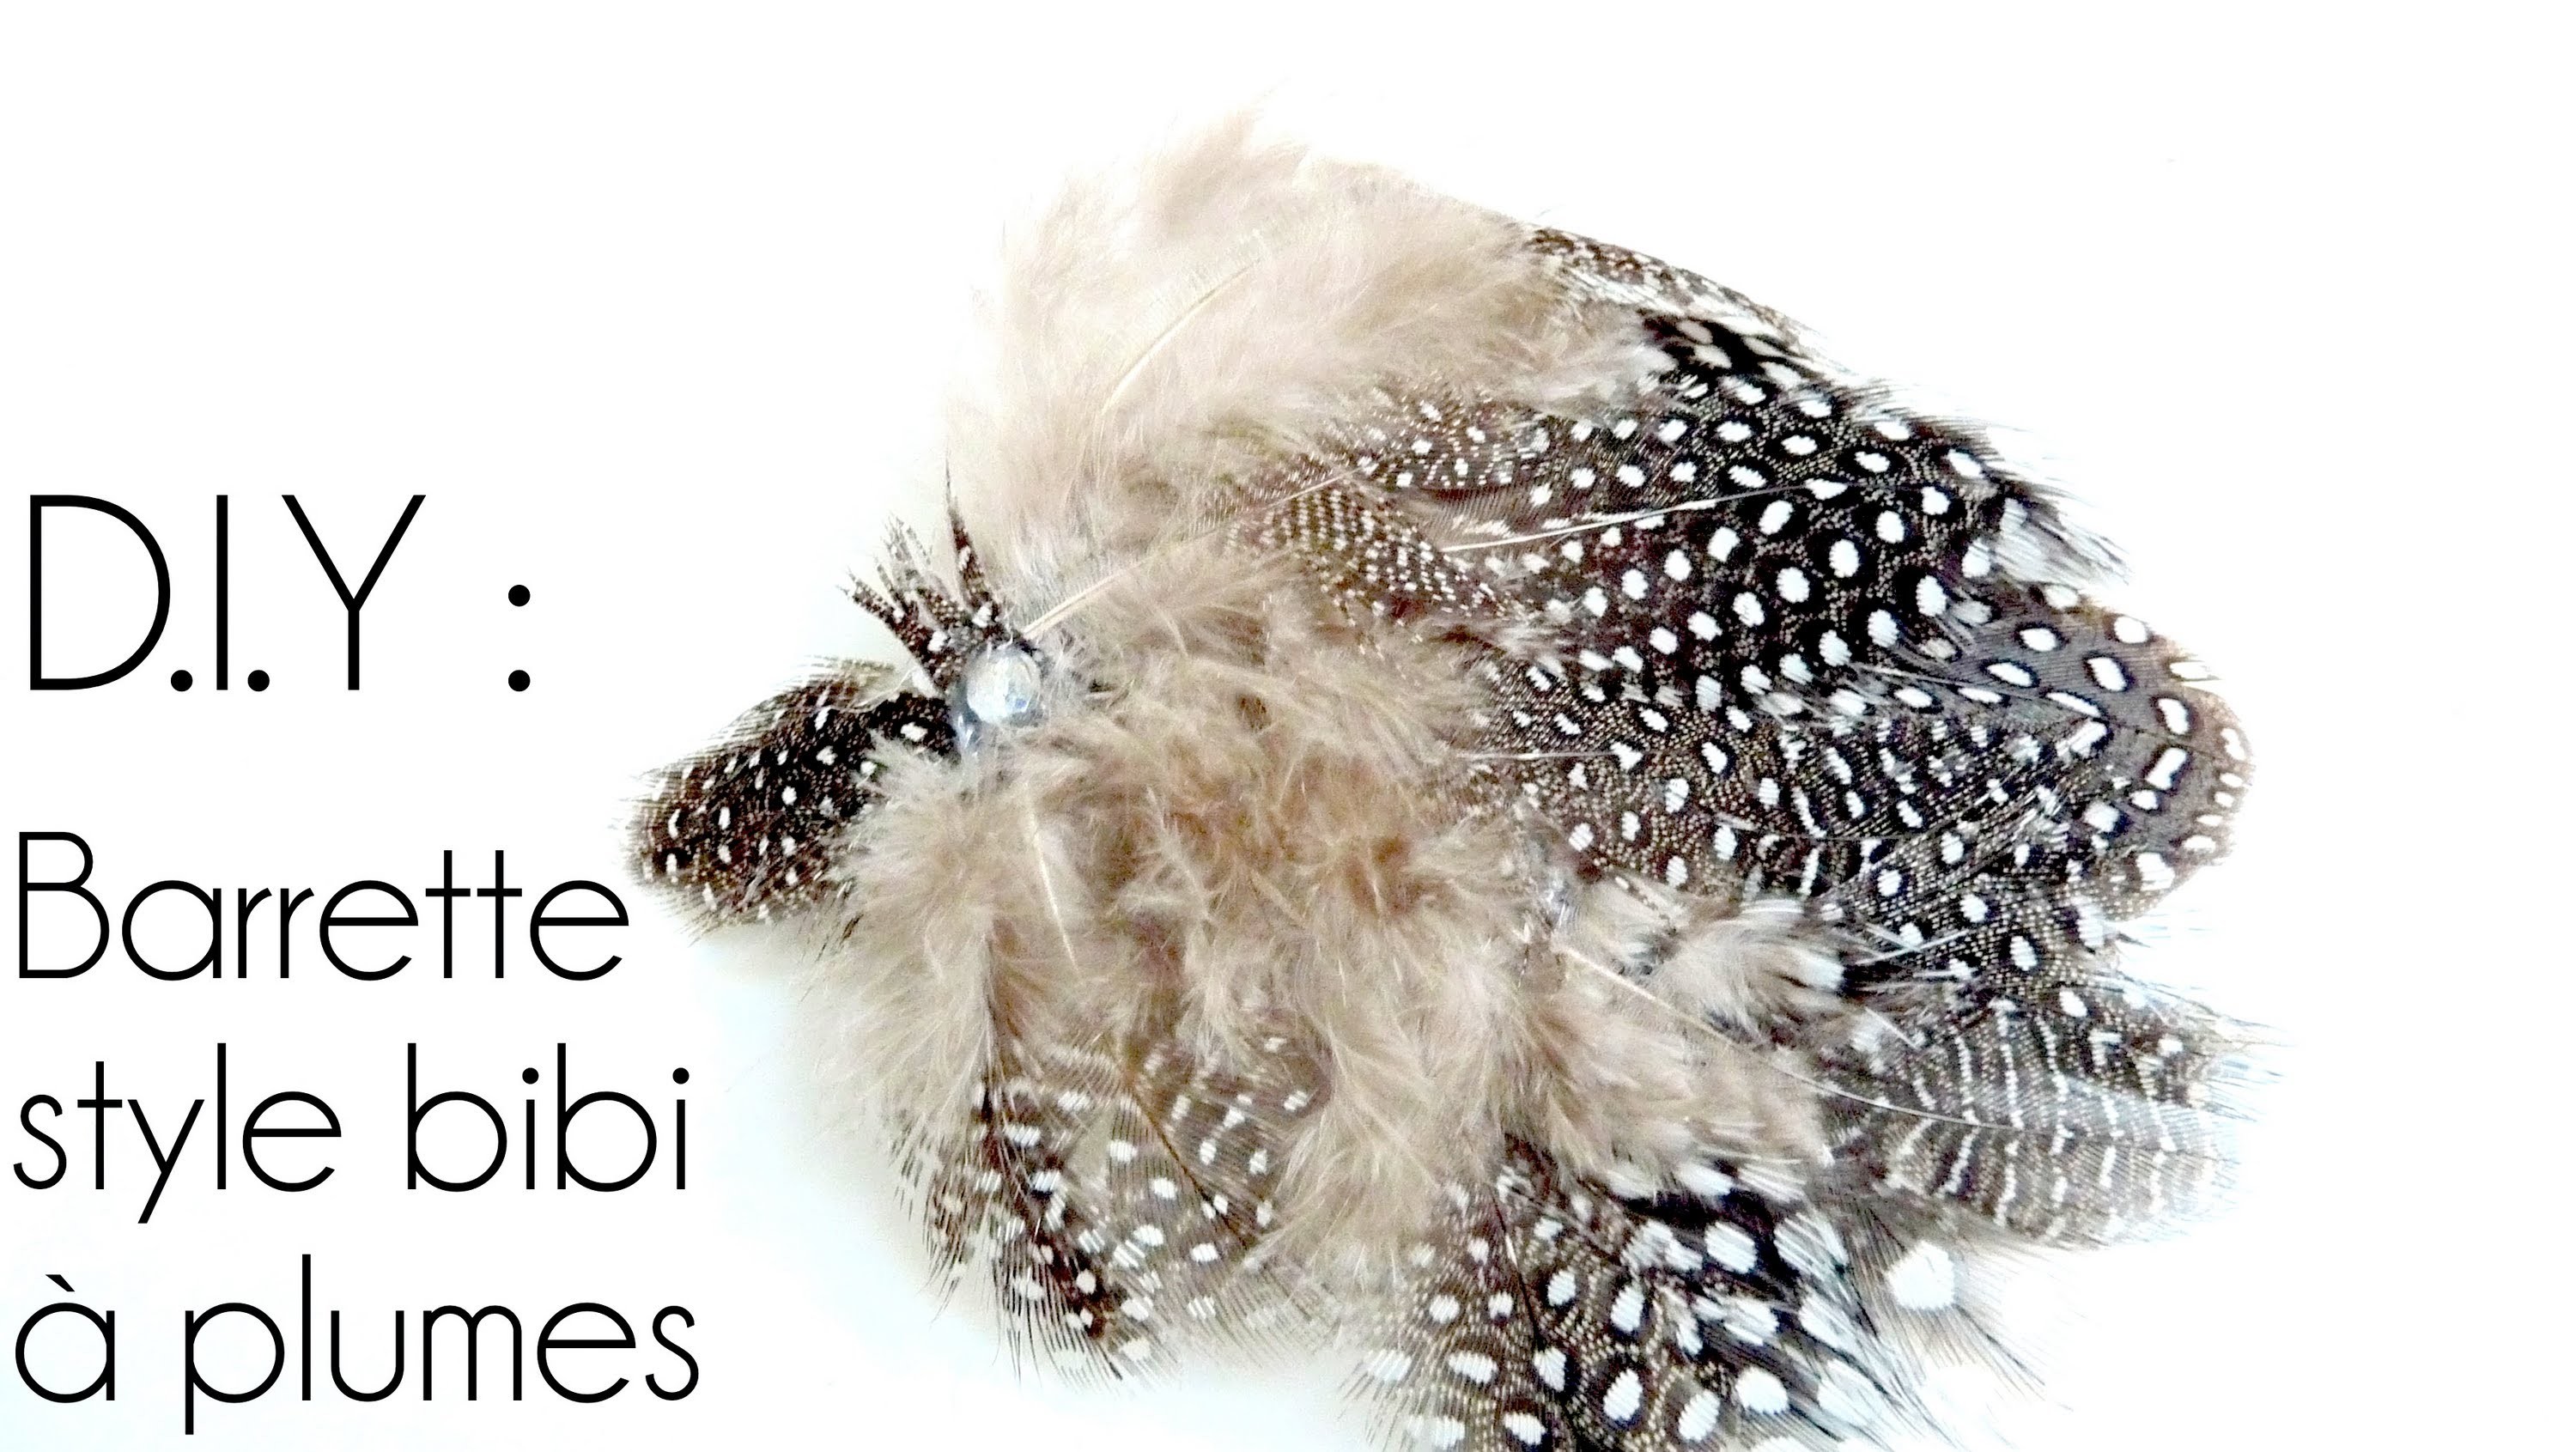 Tutoriel - DIY : Réaliser une Barrette Plume -Bibi- So Romantic. How to make a feather hairclip